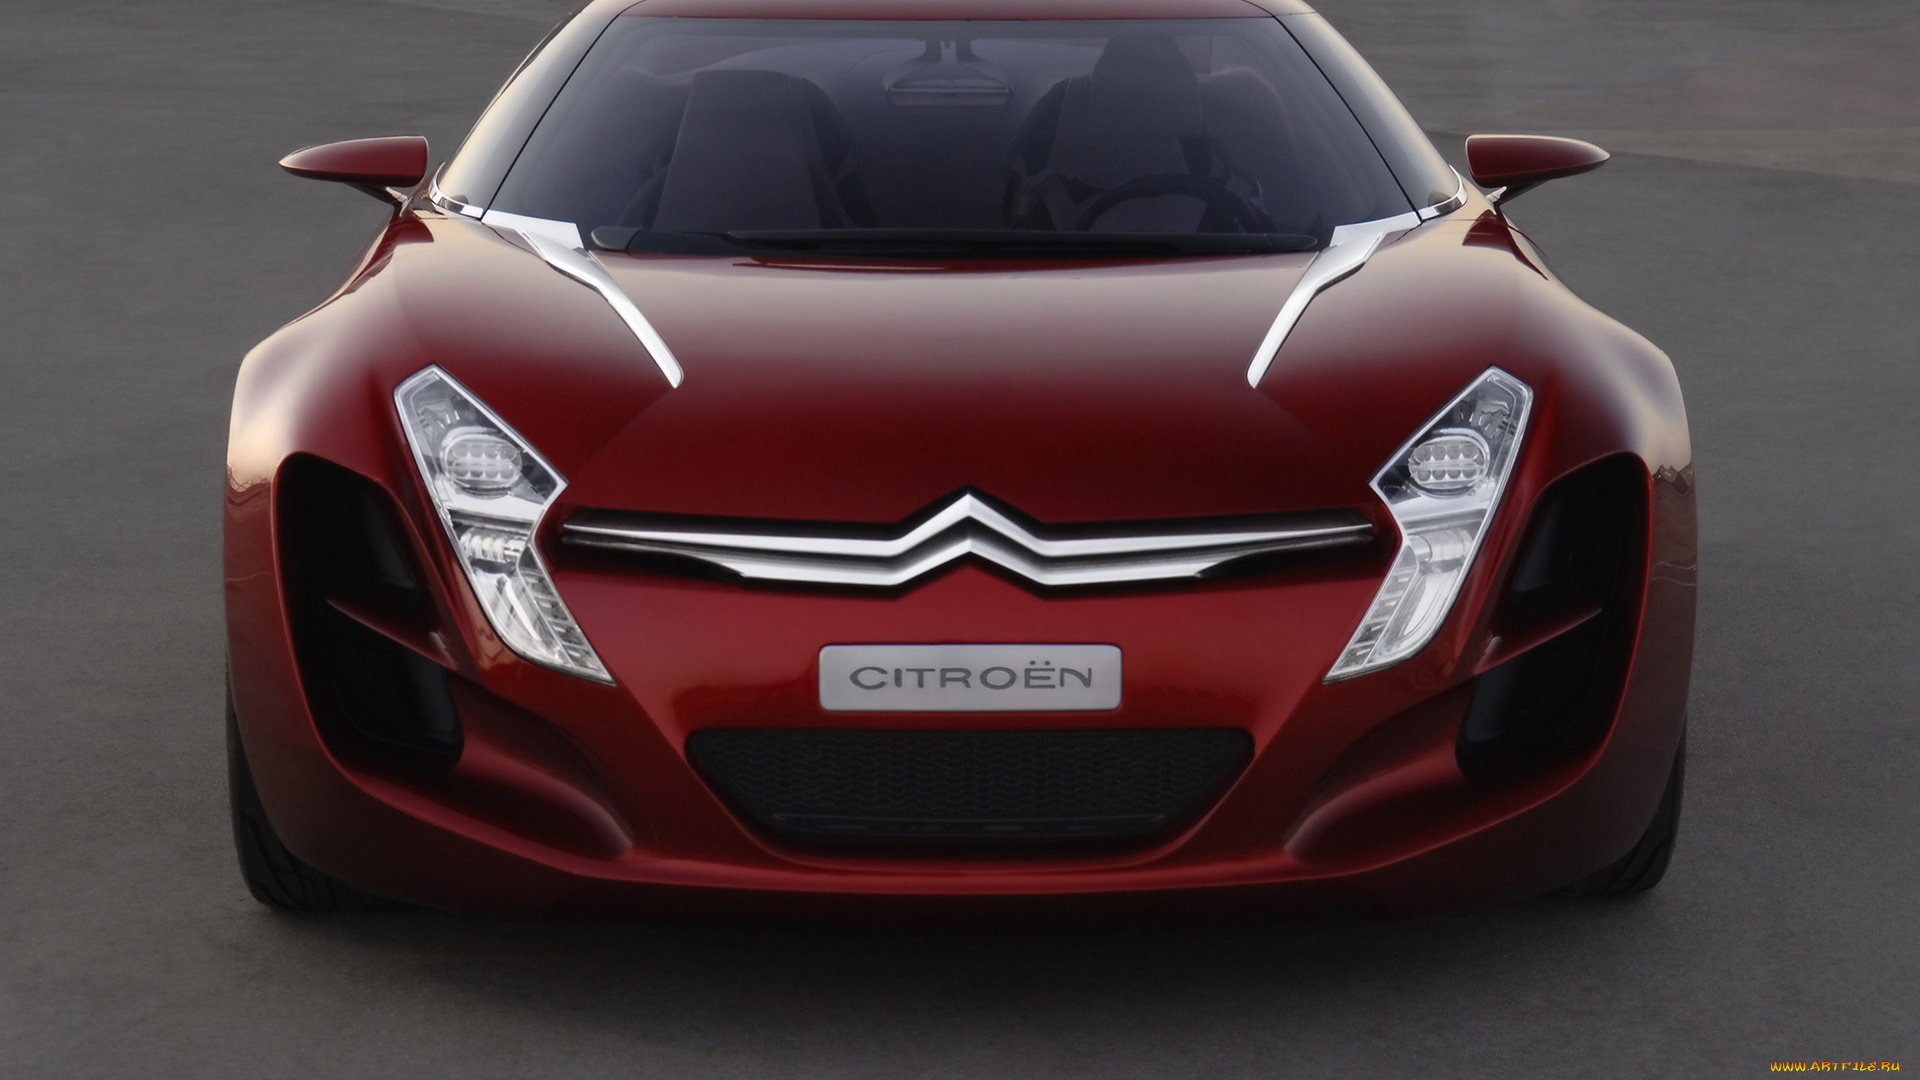 Ситроен чья марка: полный каталог моделей, характеристики, отзывы на все автомобили Citroen (Ситроен)